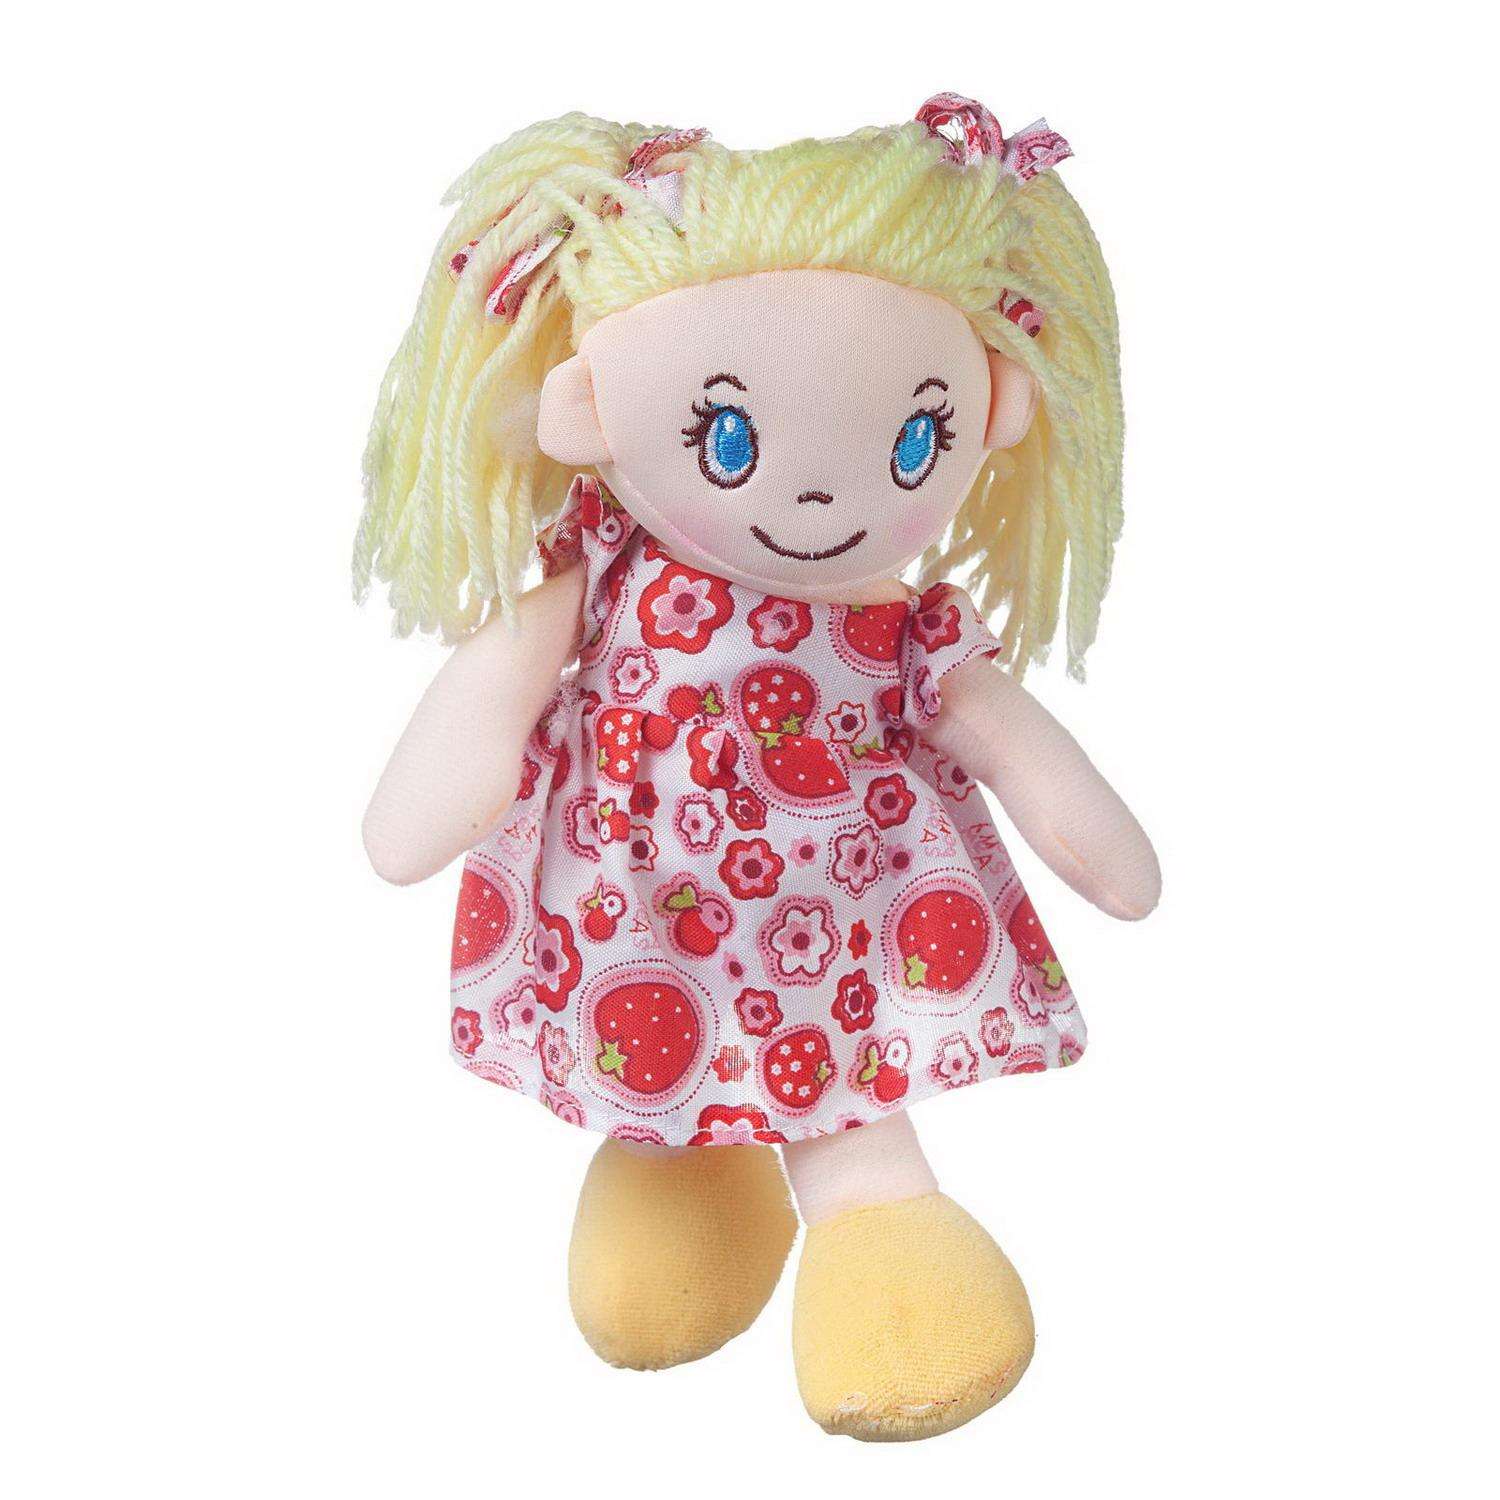 Кукла ABTOYS Мягкое сердце мягконабивная платье в цветочек 20 см M6035 - фото 1